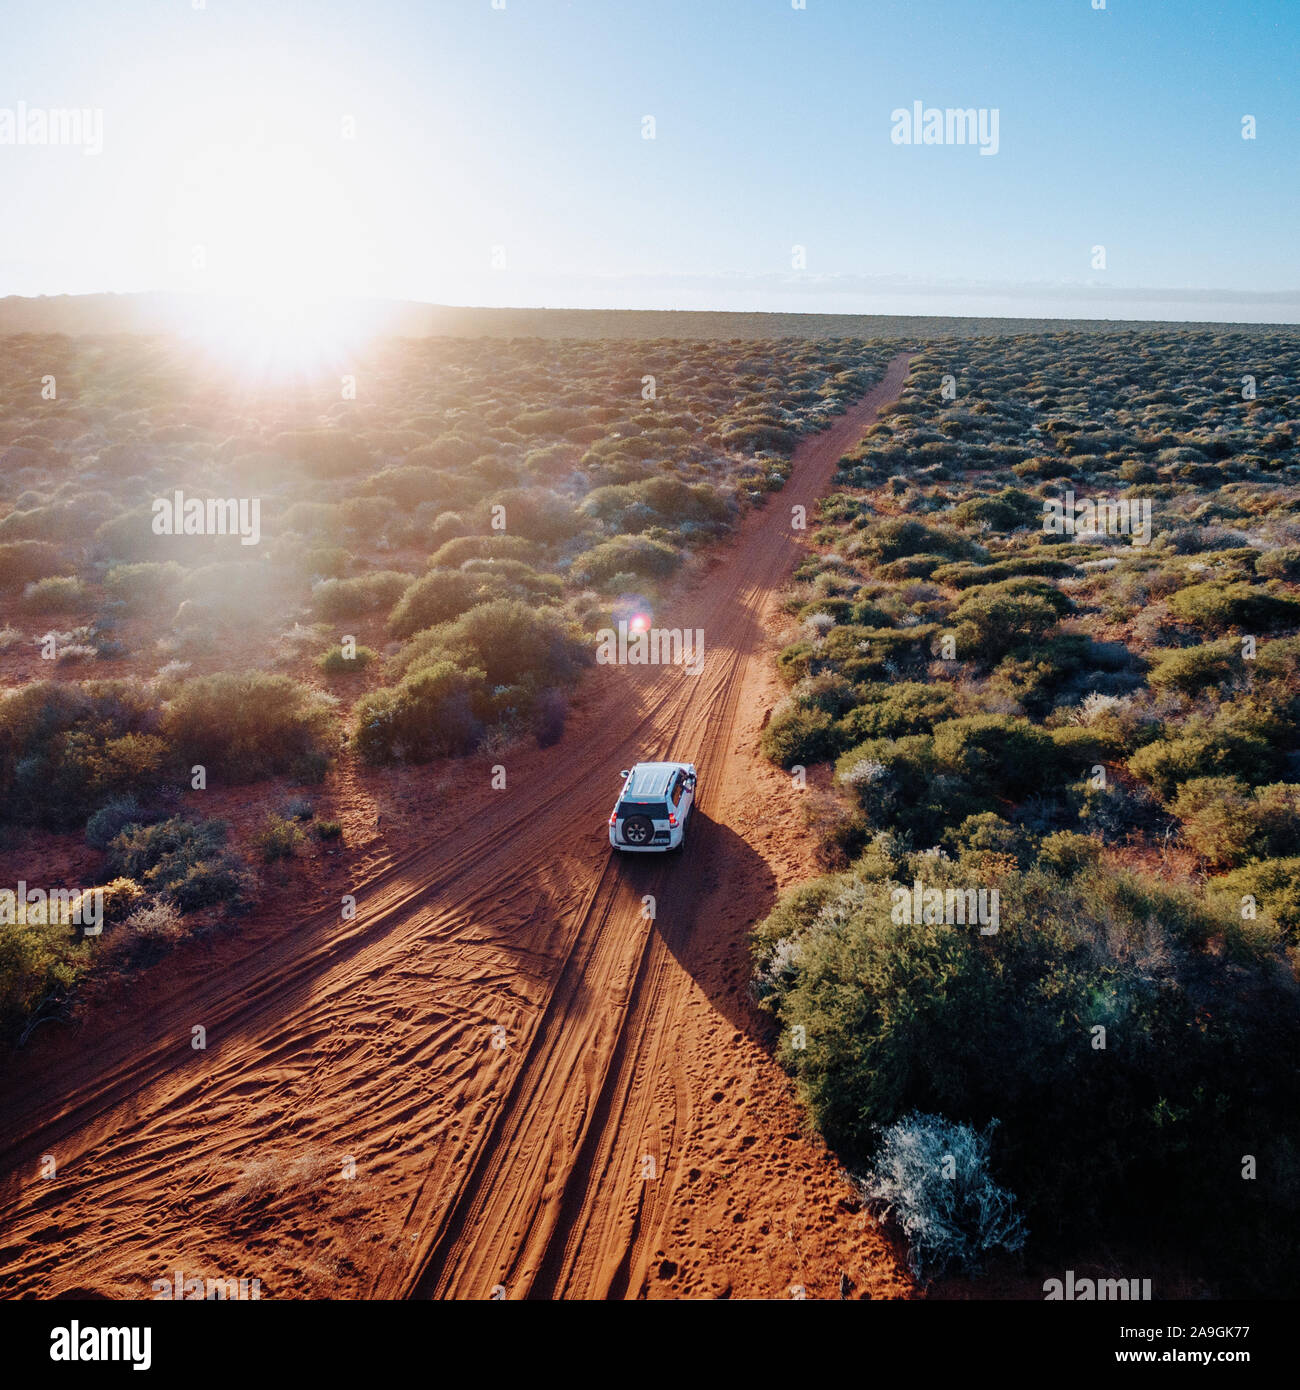 Off road Desert Adventure, Auto und Titel auf Sand im australischen Outback. Stockfoto